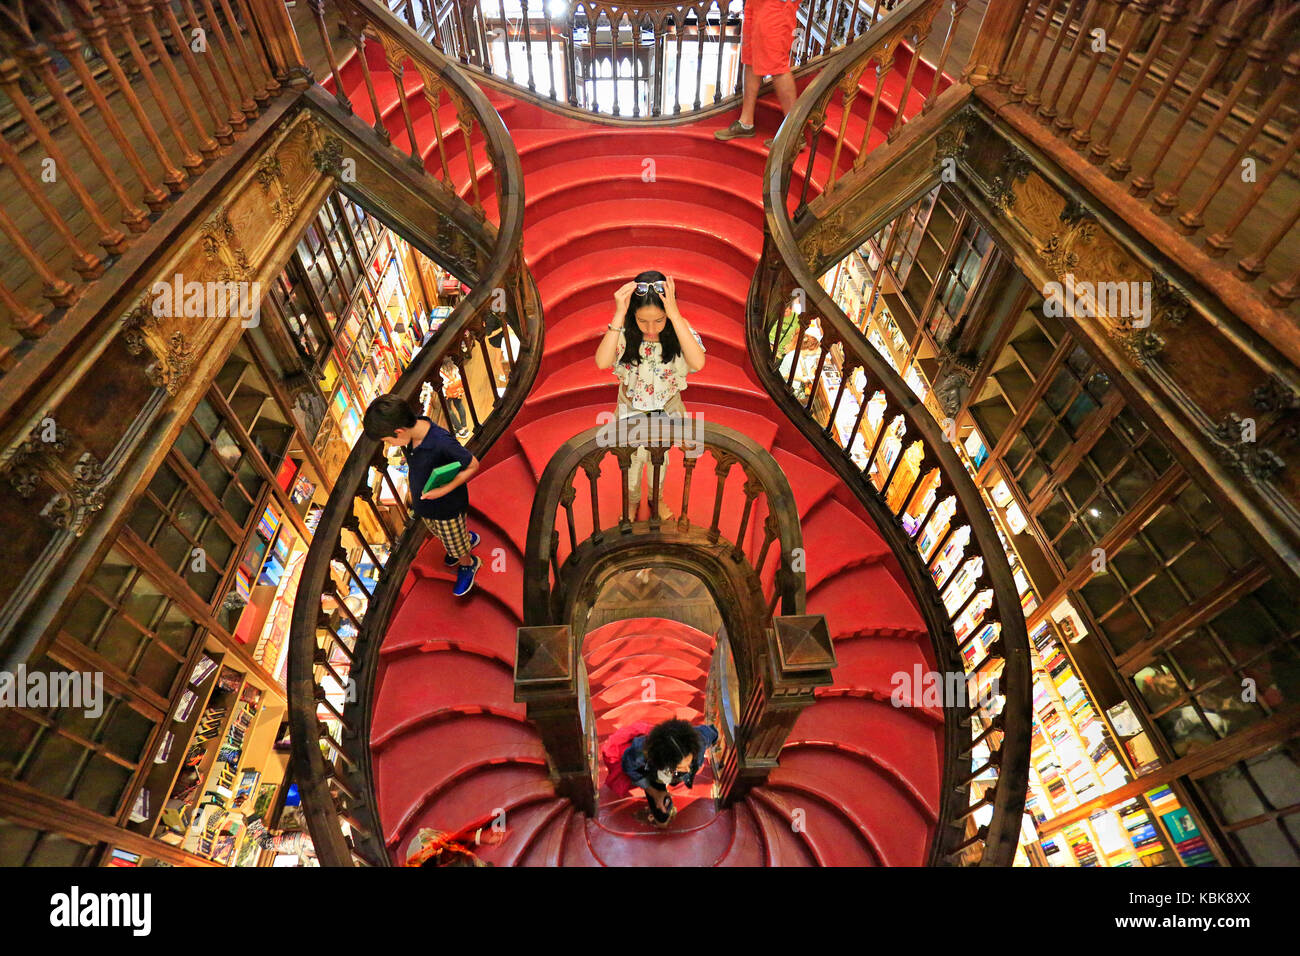 Porto, Portugal - Julio 07, 2017: Alta Vista angular de escaleras en el interior de la famosa librería lello e irmao, considerado como uno de los más bellos de Europa. Foto de stock